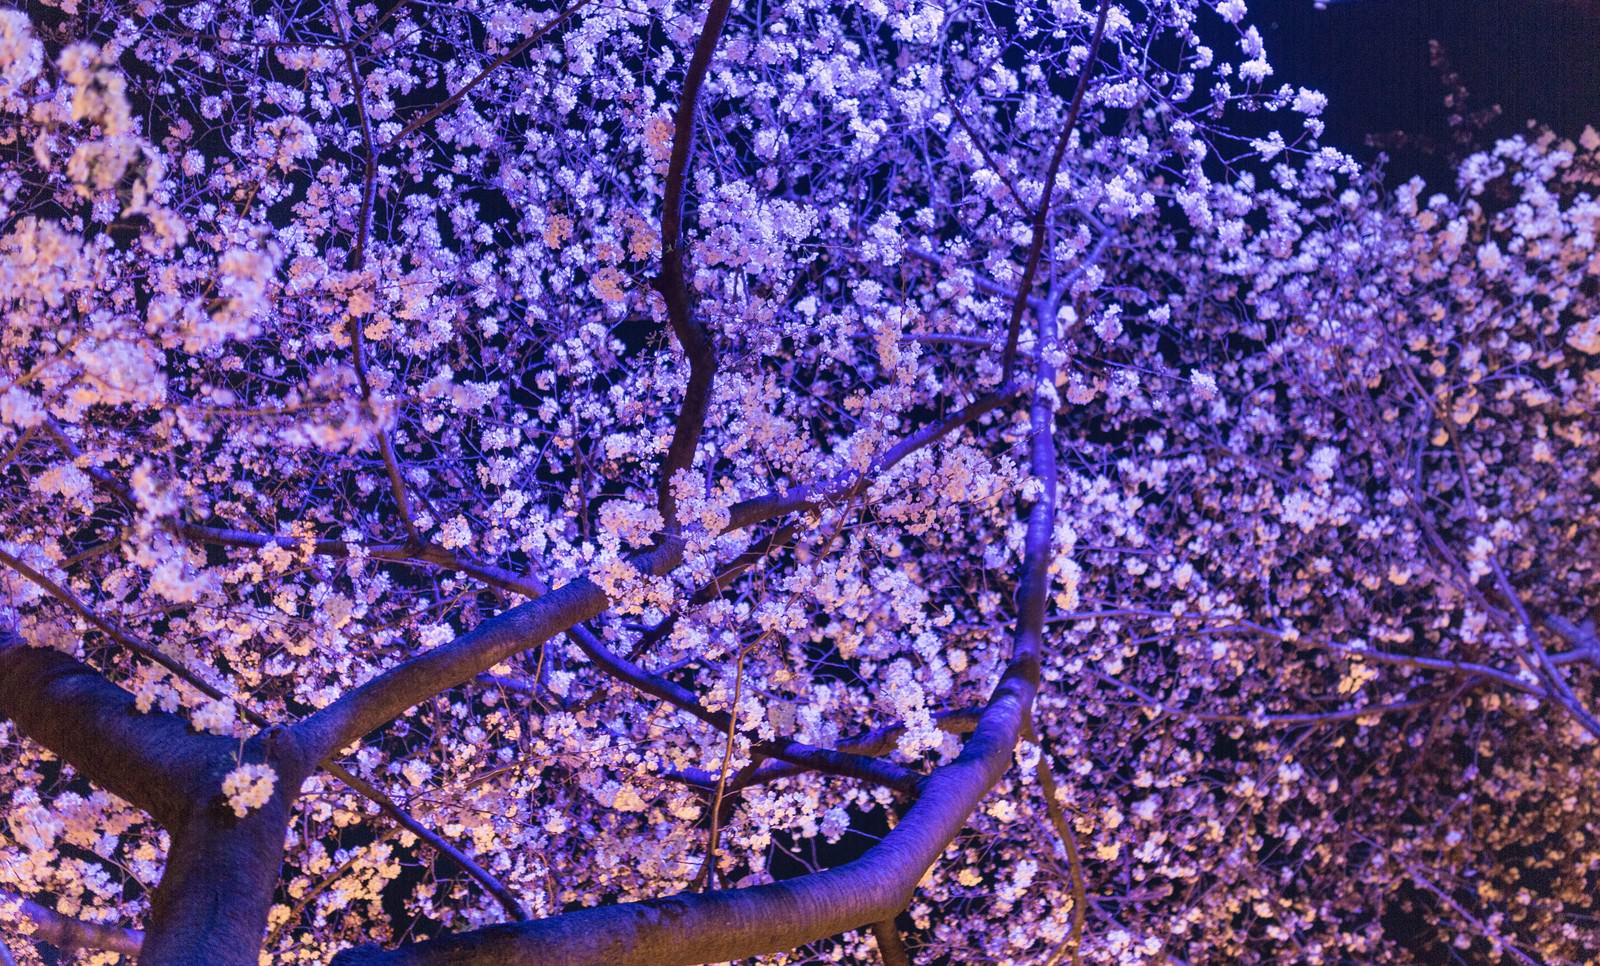 ライトアップした夜桜の写真 画像 を無料ダウンロード フリー素材のぱくたそ